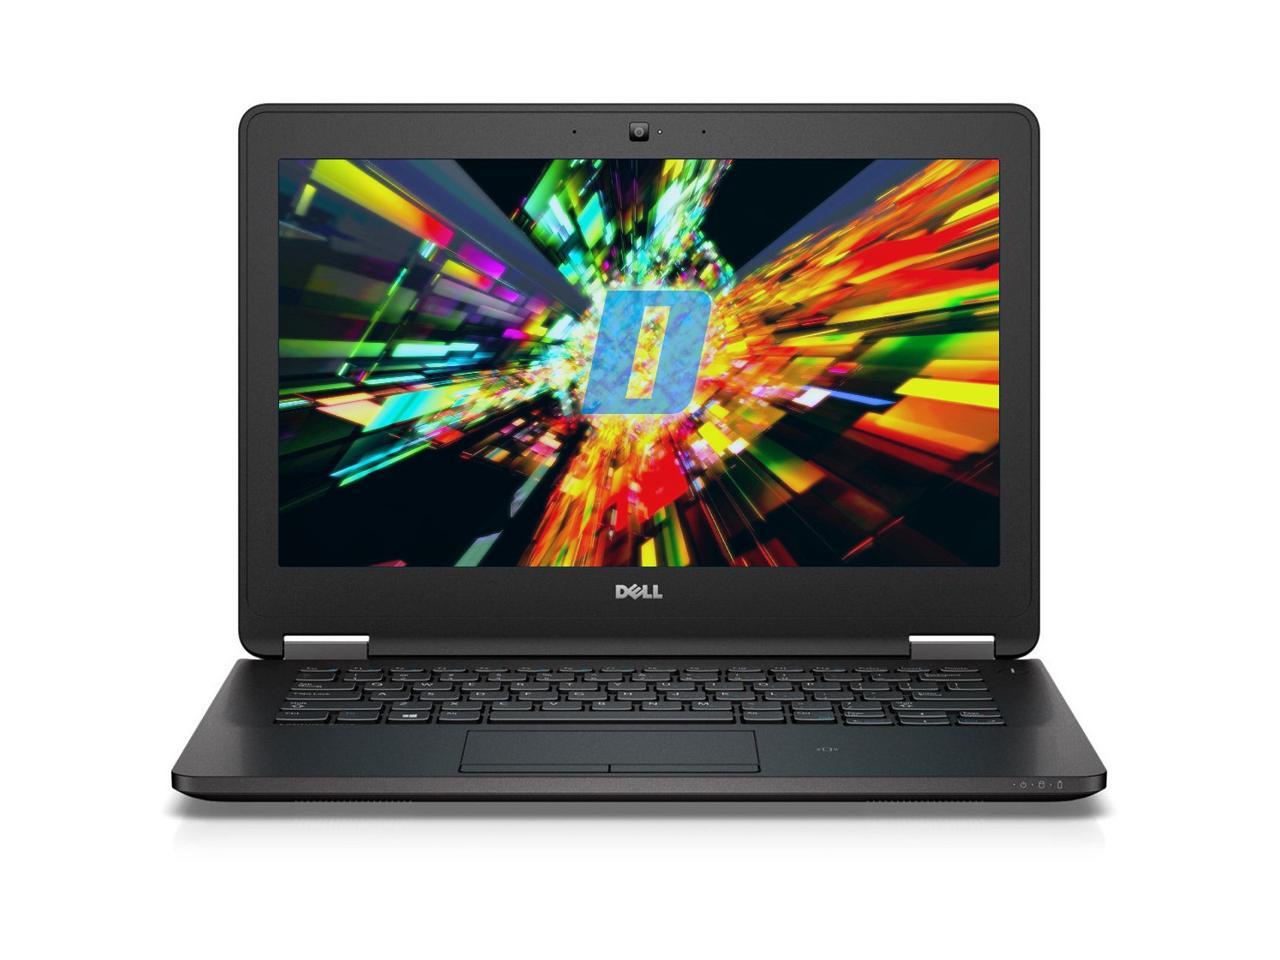 Dell Latitude E7270 12.5" Laptop, Intel Core i7 6600U 2.6Ghz, 8GB DDR4, 512GB M.2 SSD, HDMI, Webcam, Windows 10